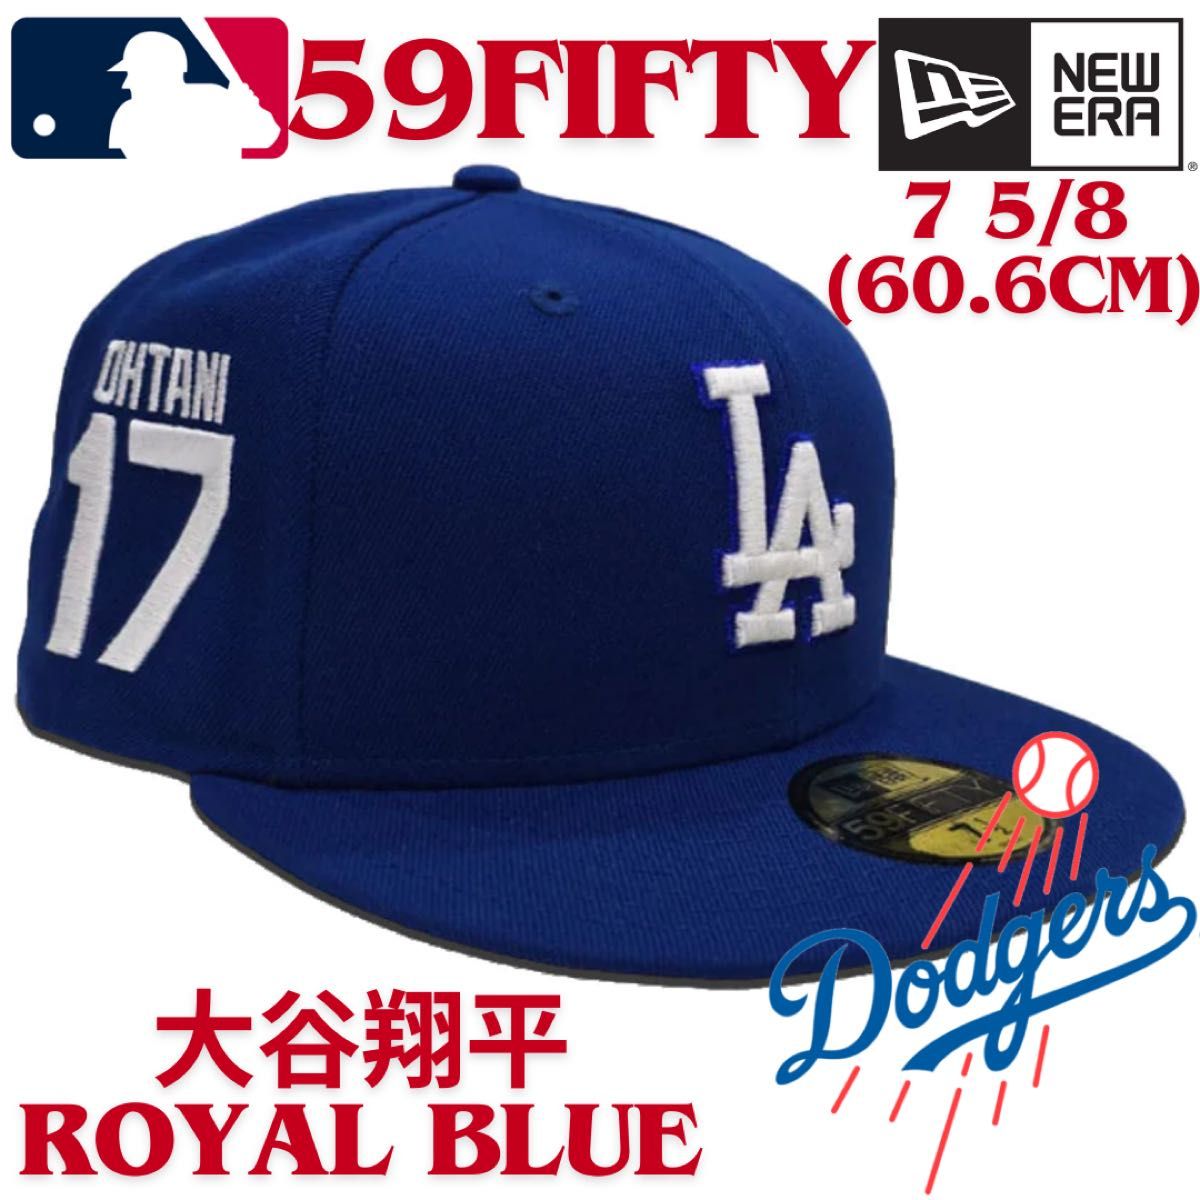 【海外限定】ニューエラ 59FIFTY ロサンゼルスドジャース 大谷翔平 背番号 サイドパッチ Dodgers new era